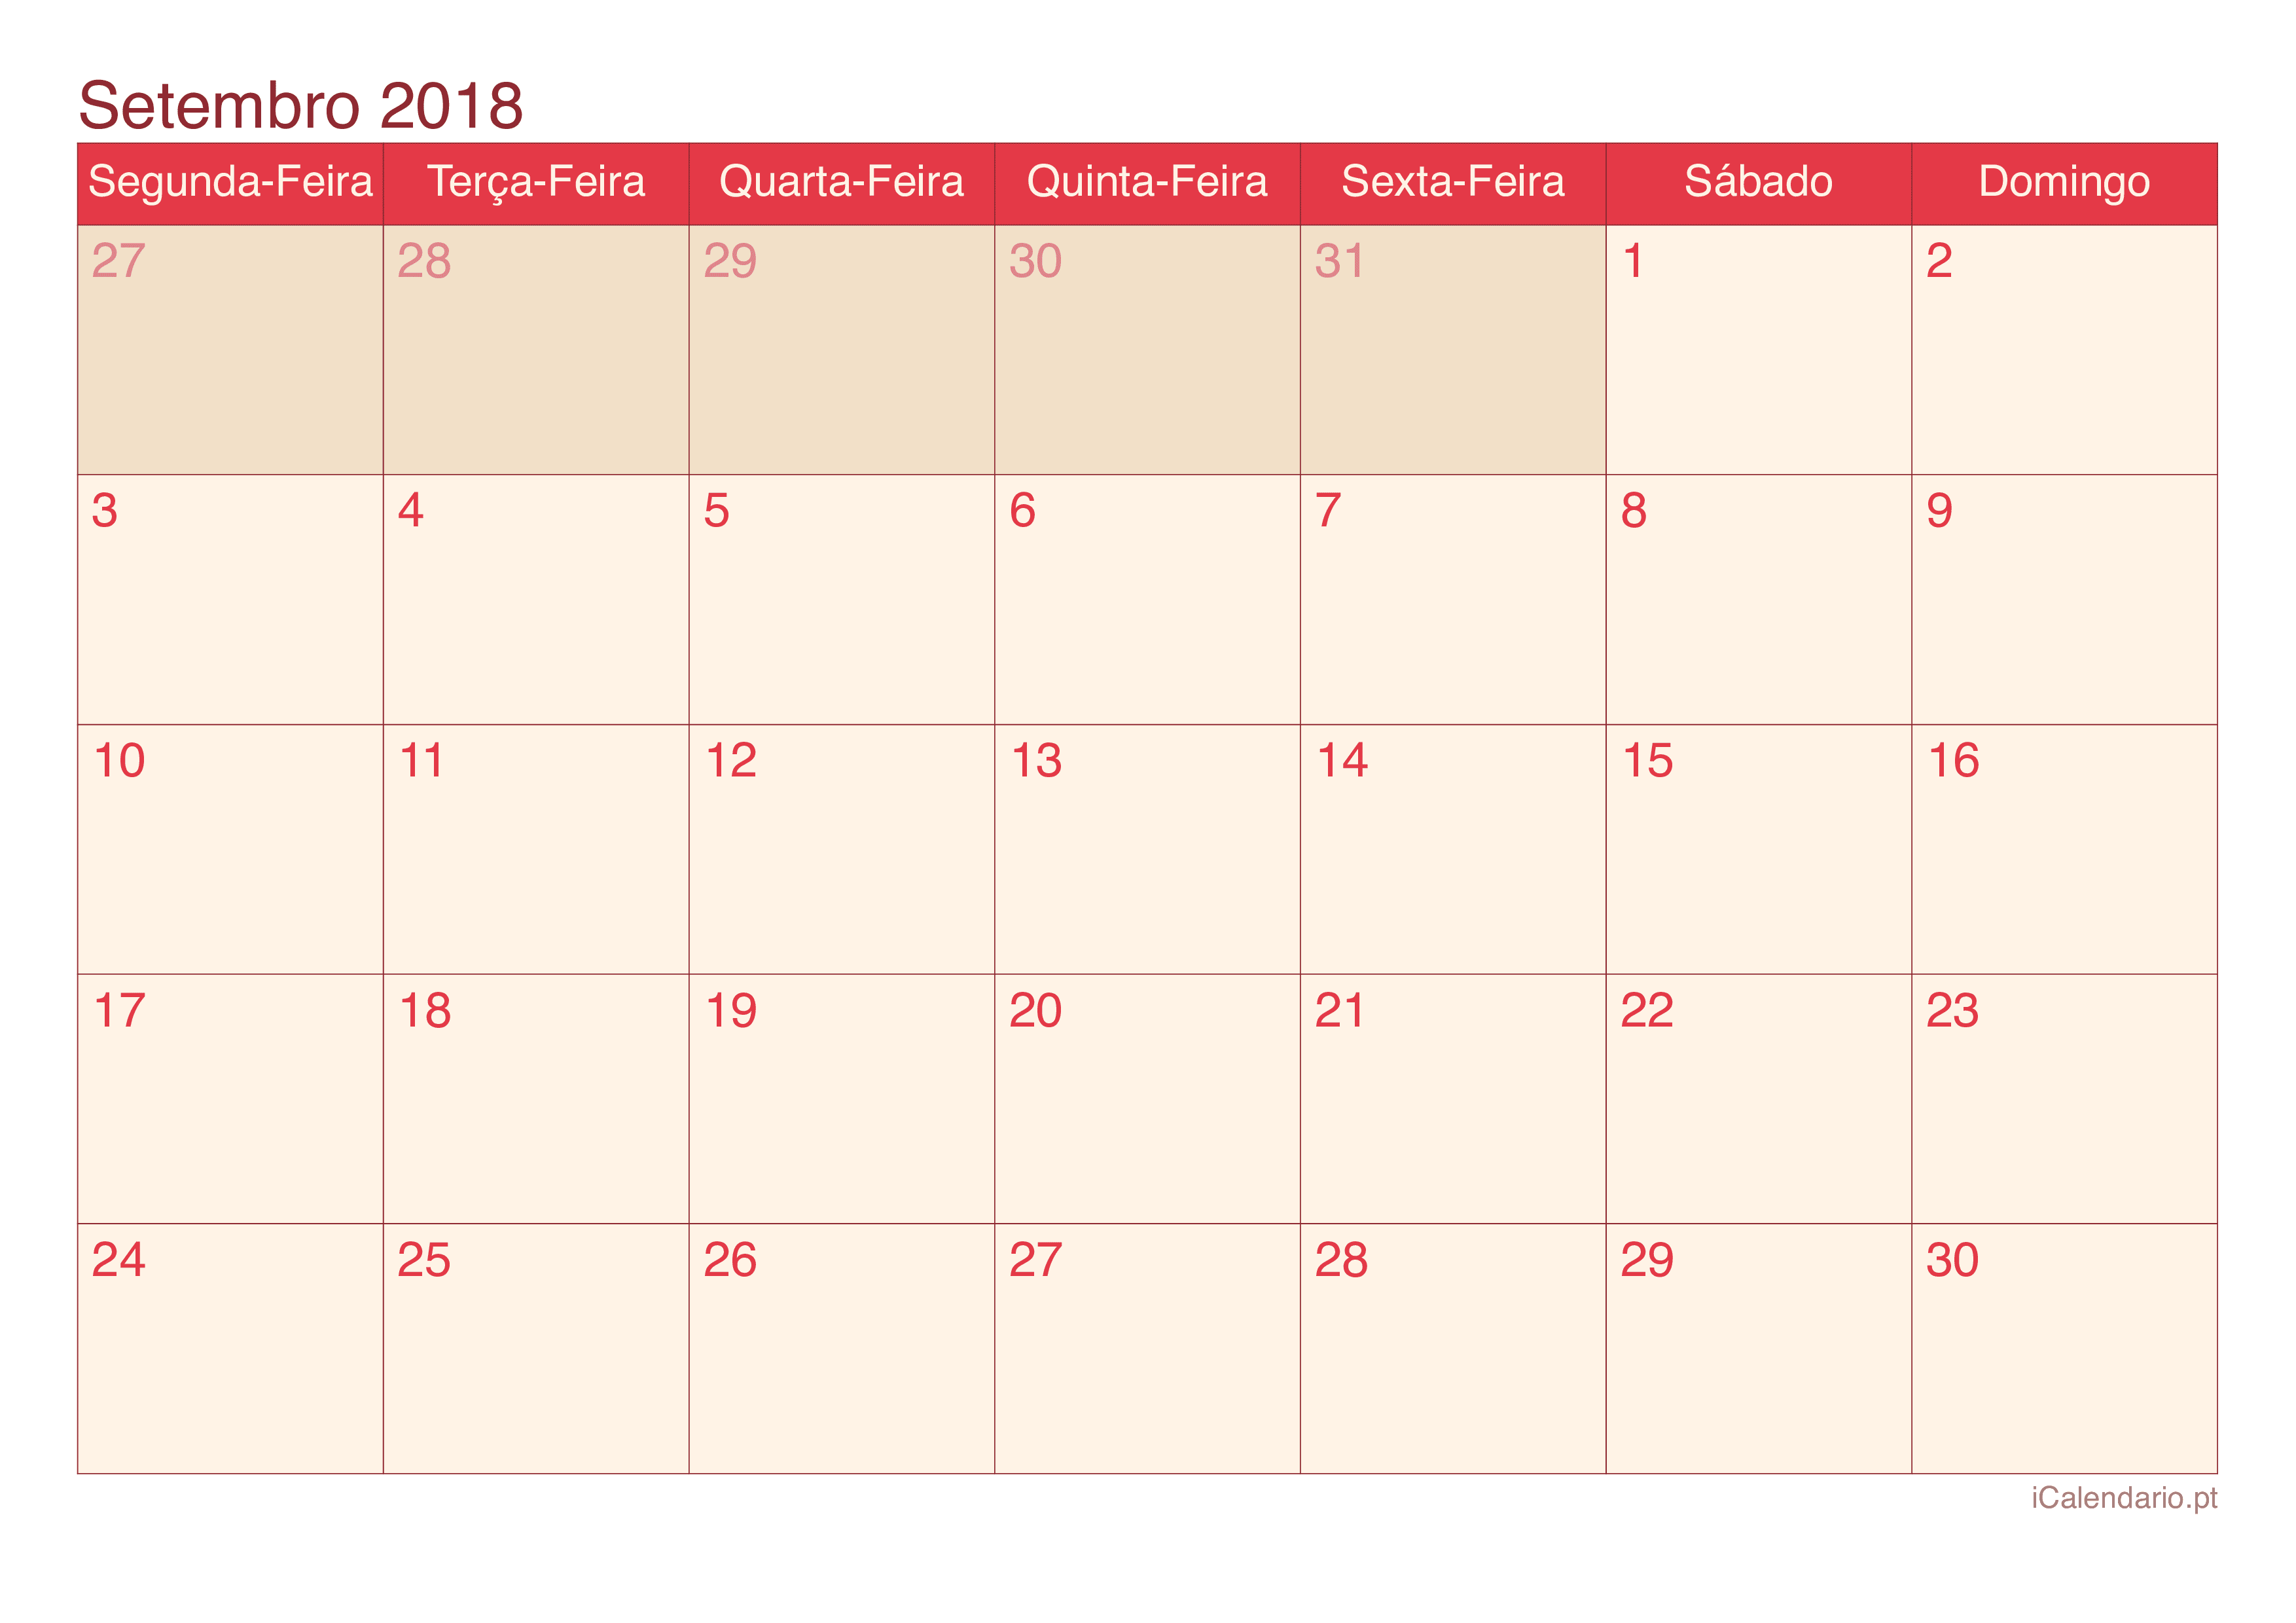 Calendário de setembro 2018 - Cherry